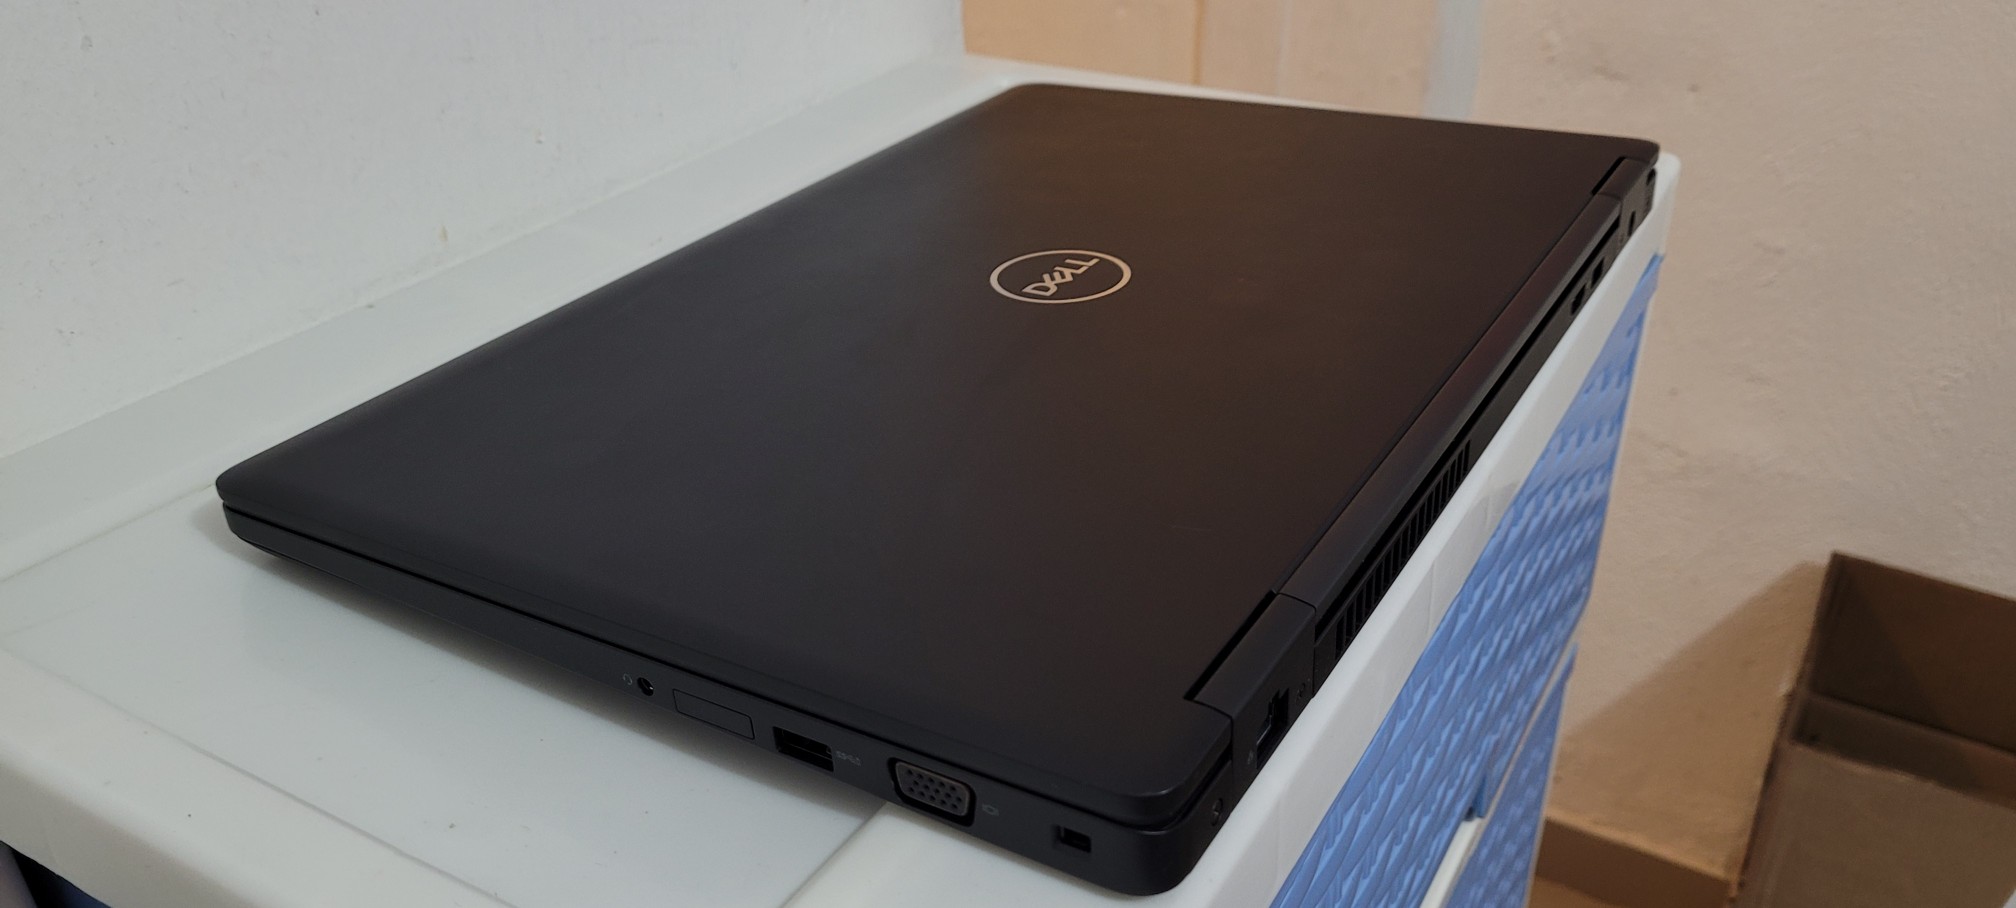 computadoras y laptops - Dell 5580 17 Pulg Core i5 7ma Gen Ram 8gb ddr4 Disco 128gb SSD Wifi 2